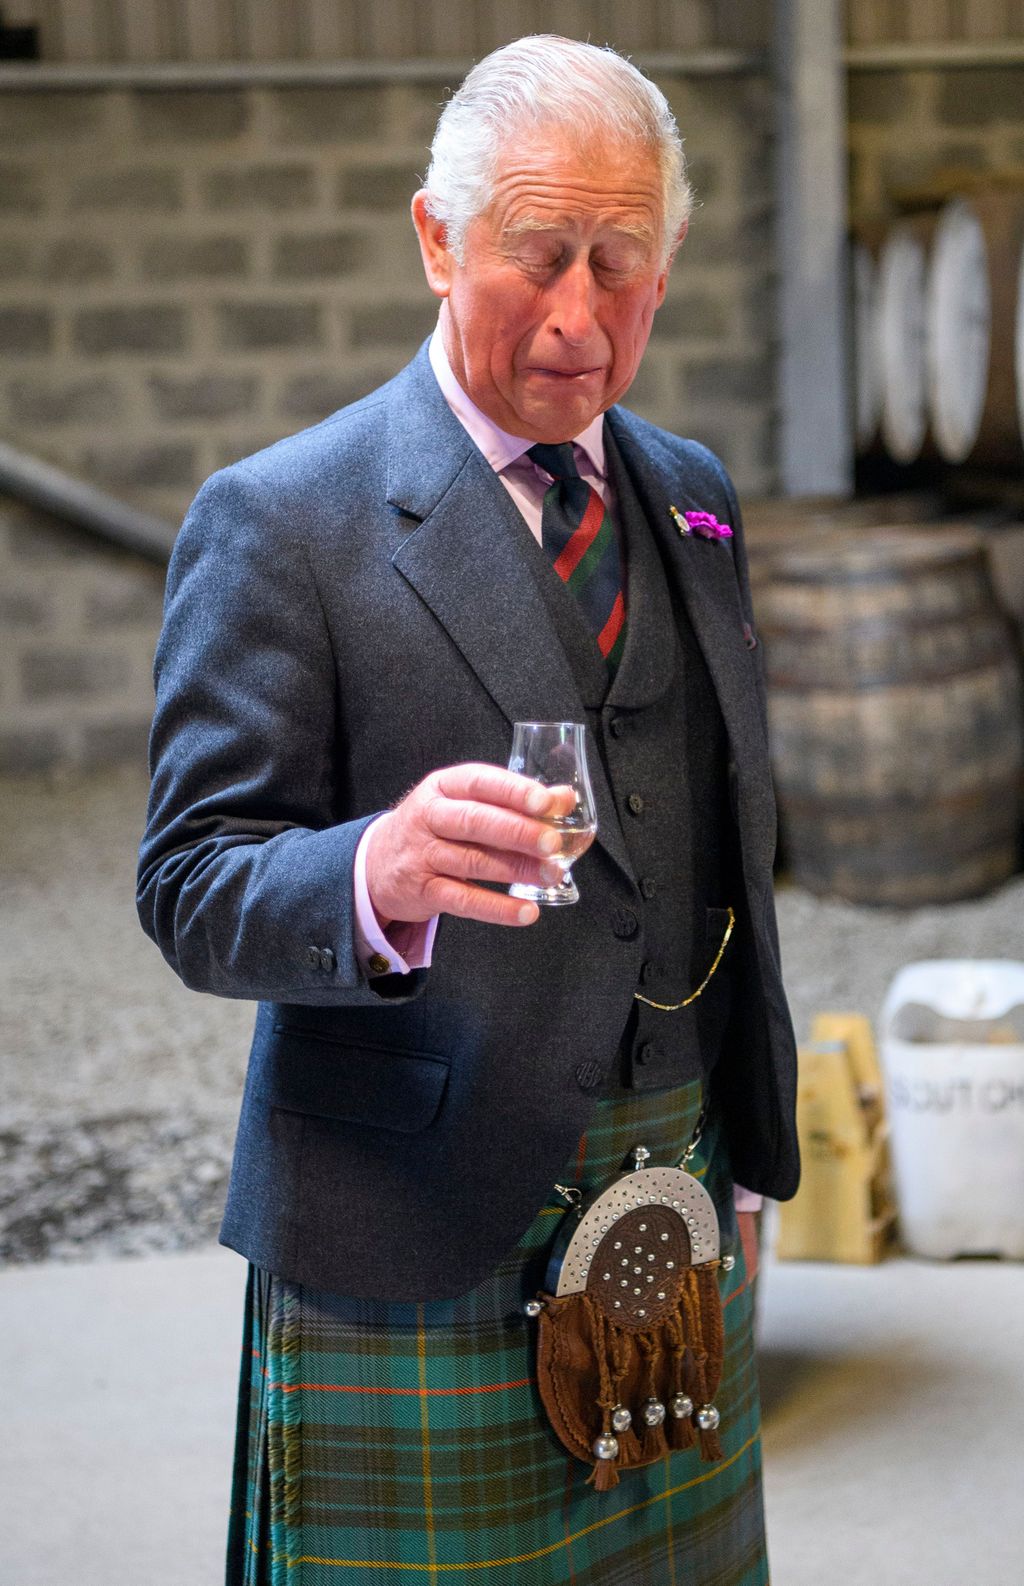 Prinssi Charles hullutteli Skotlannissa - nuuhki tynnyriä ja maisteli viskejä, tuoreet kuvat